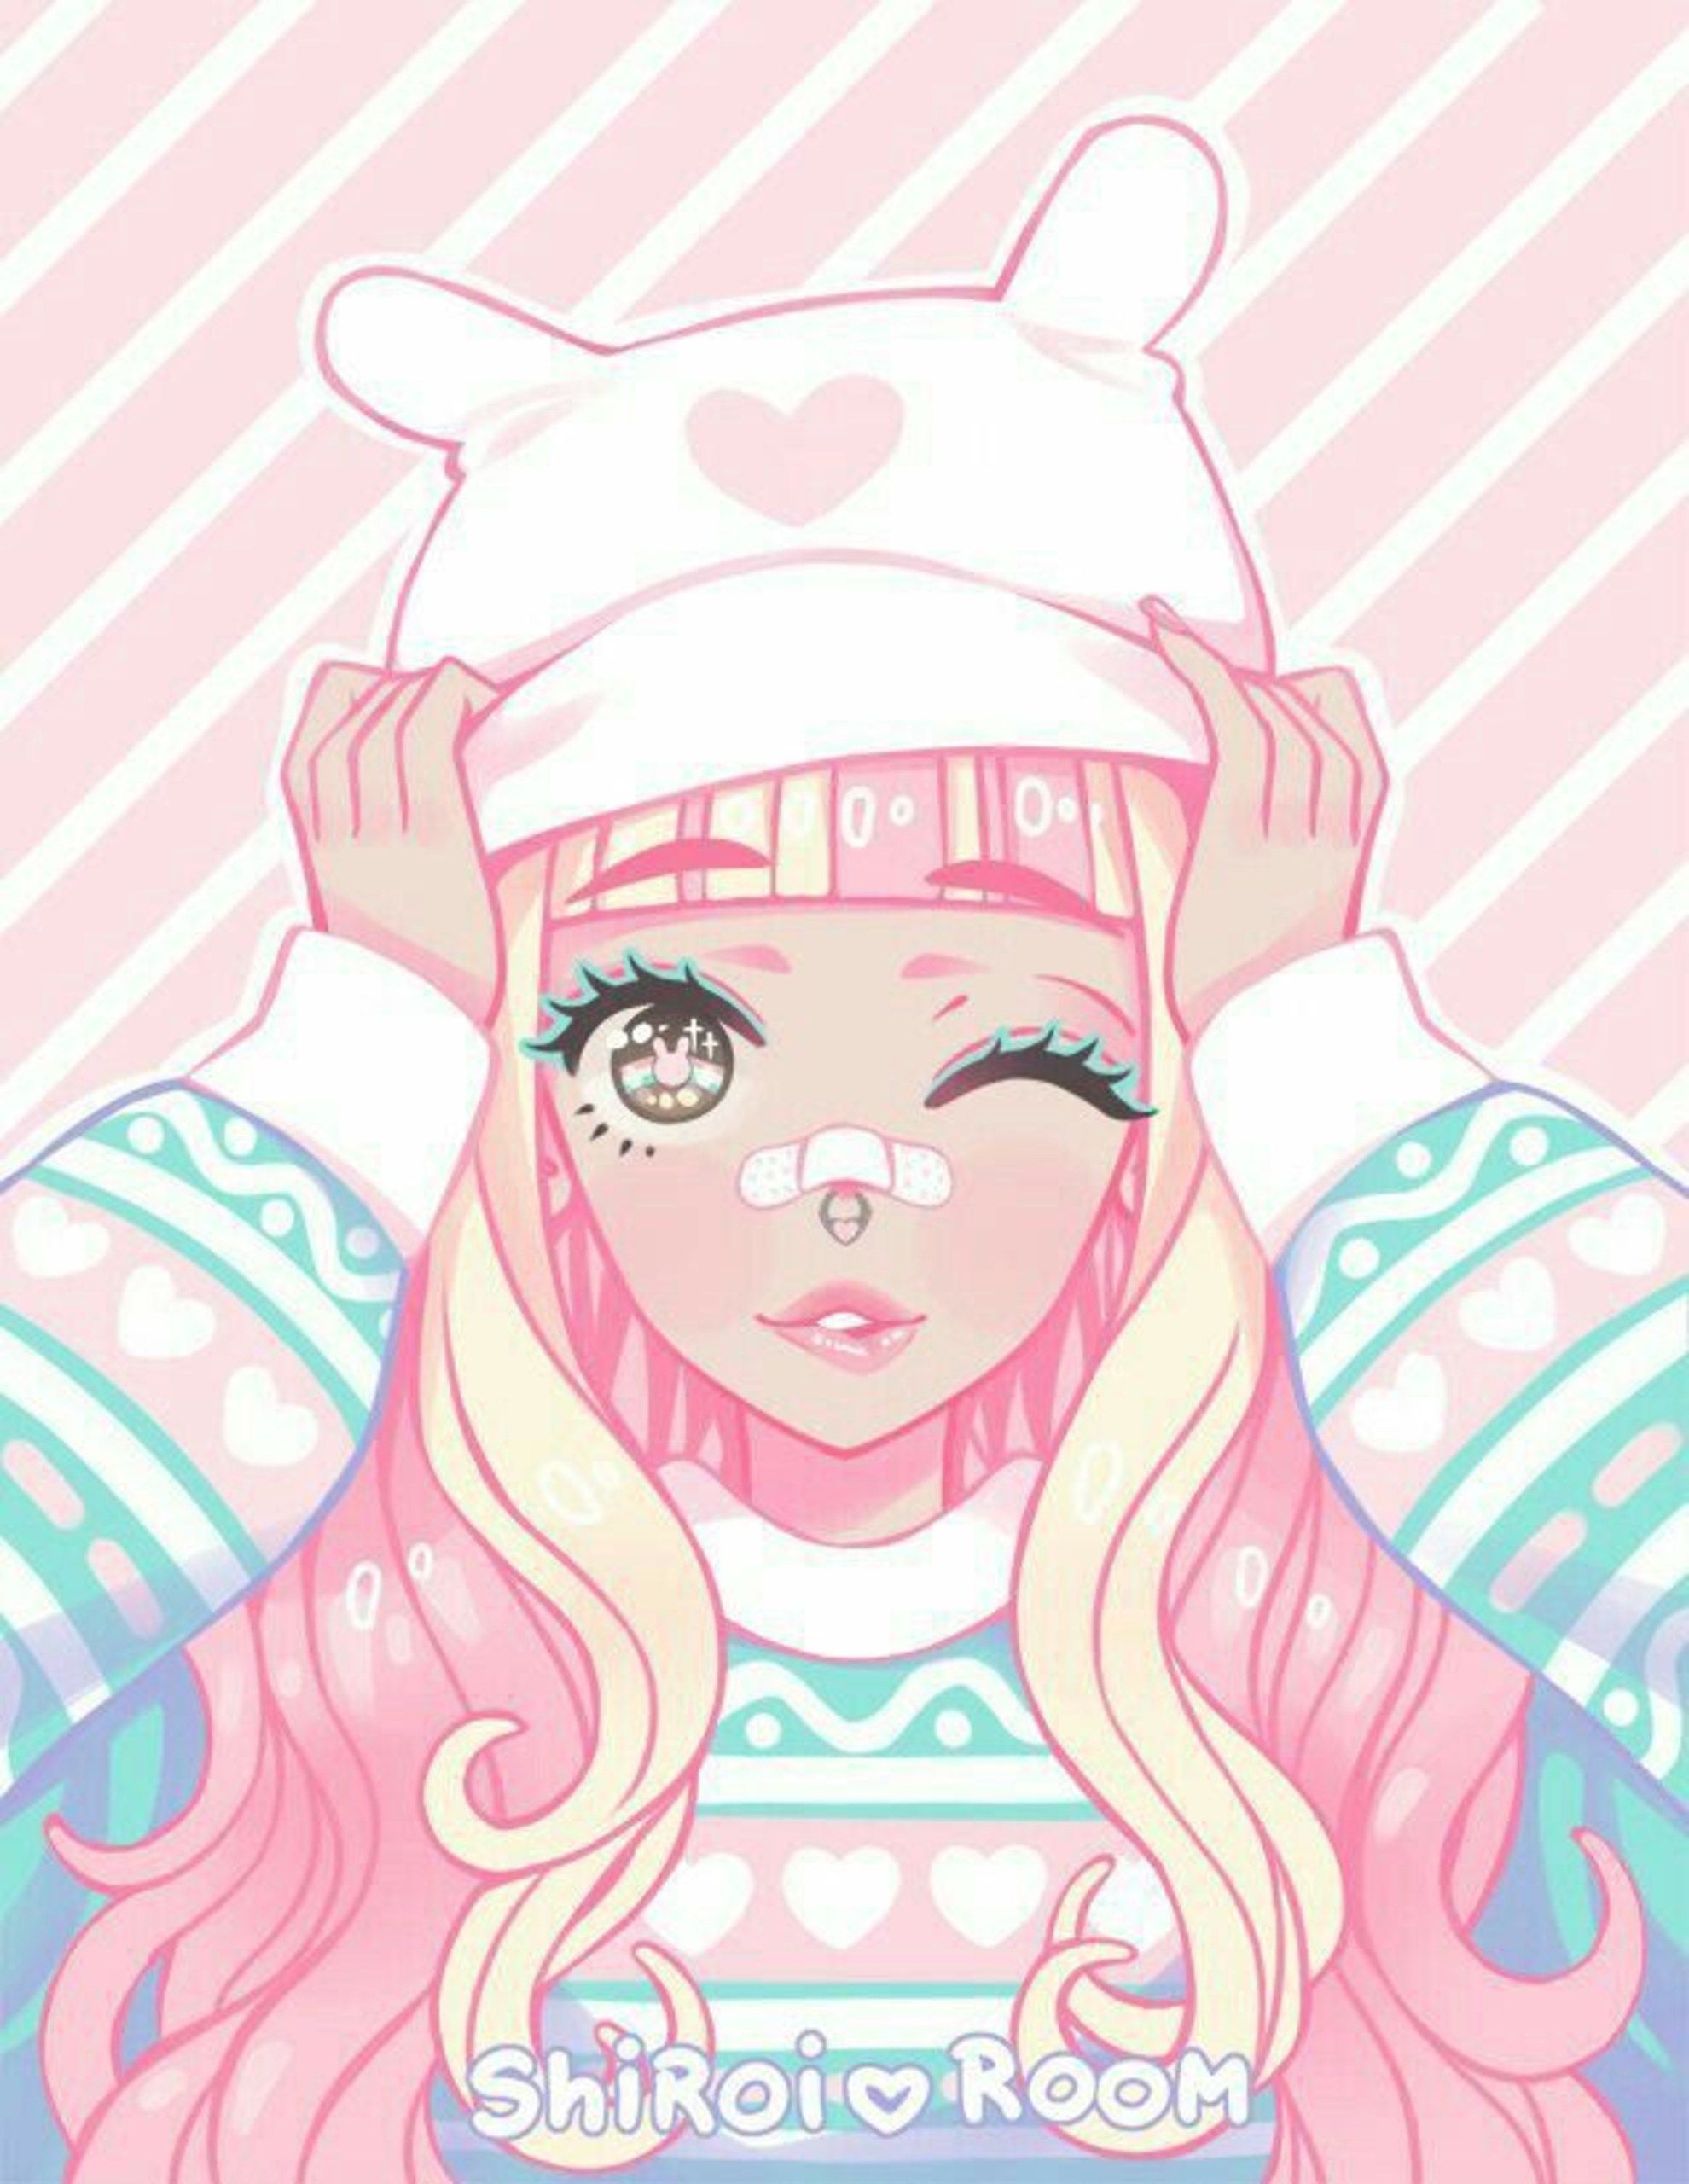 Pastel Anime Girl Wallpaper